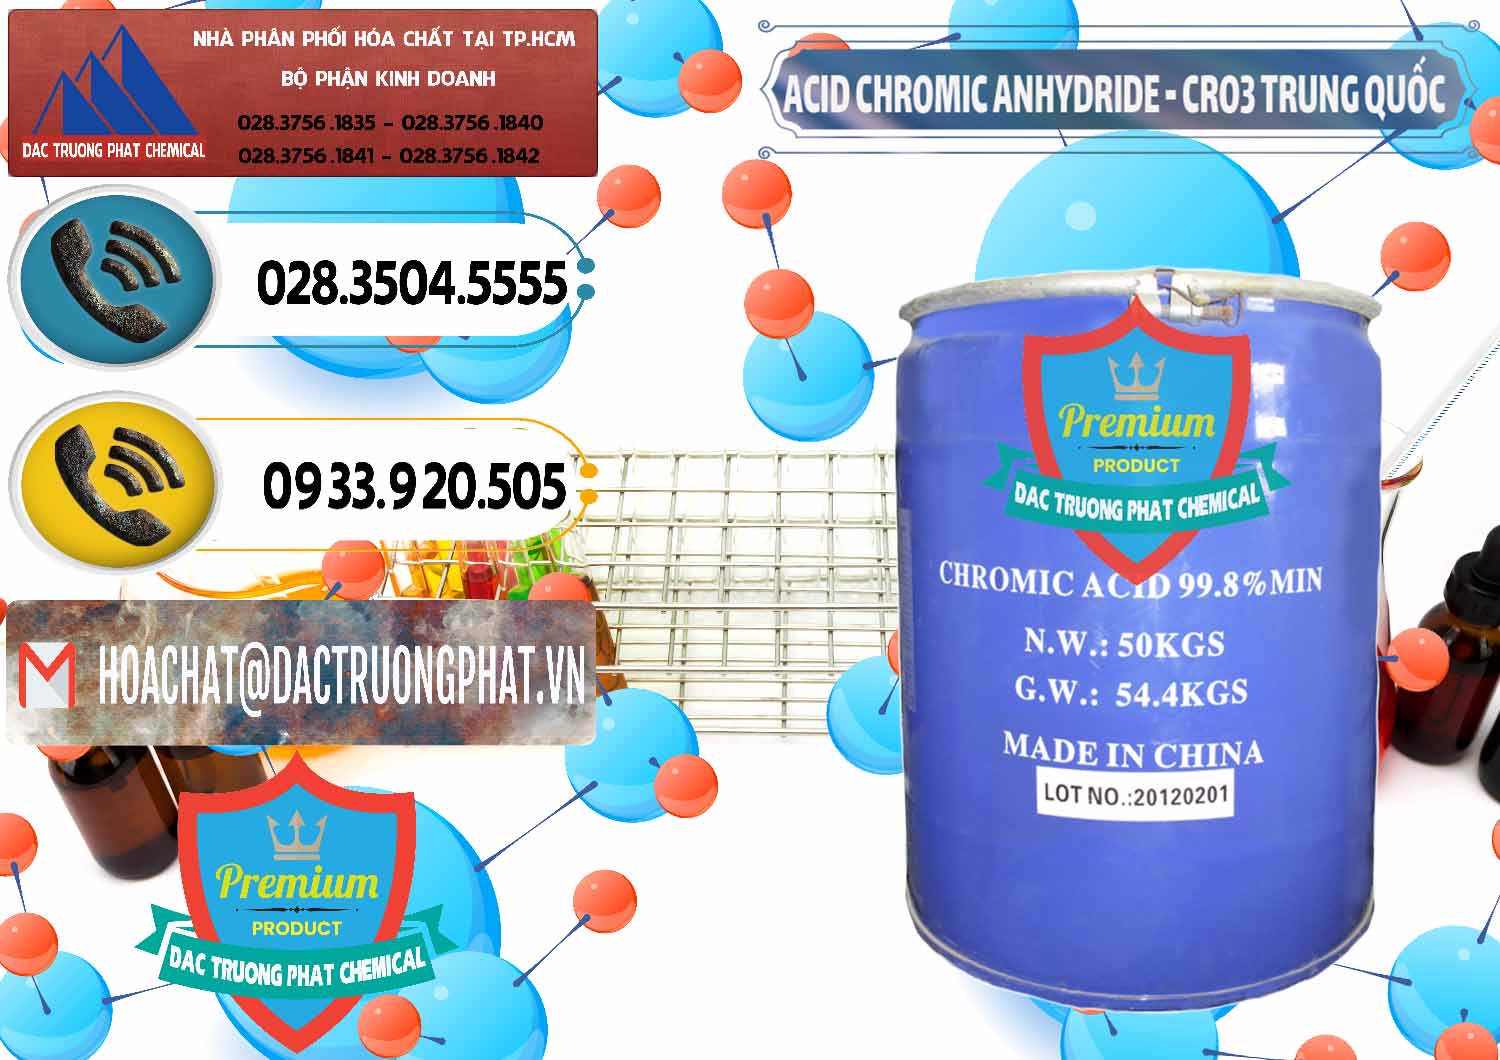 Cty chuyên bán & cung ứng Acid Chromic Anhydride - Cromic CRO3 Trung Quốc China - 0007 - Đơn vị chuyên cung cấp - kinh doanh hóa chất tại TP.HCM - hoachatdetnhuom.vn